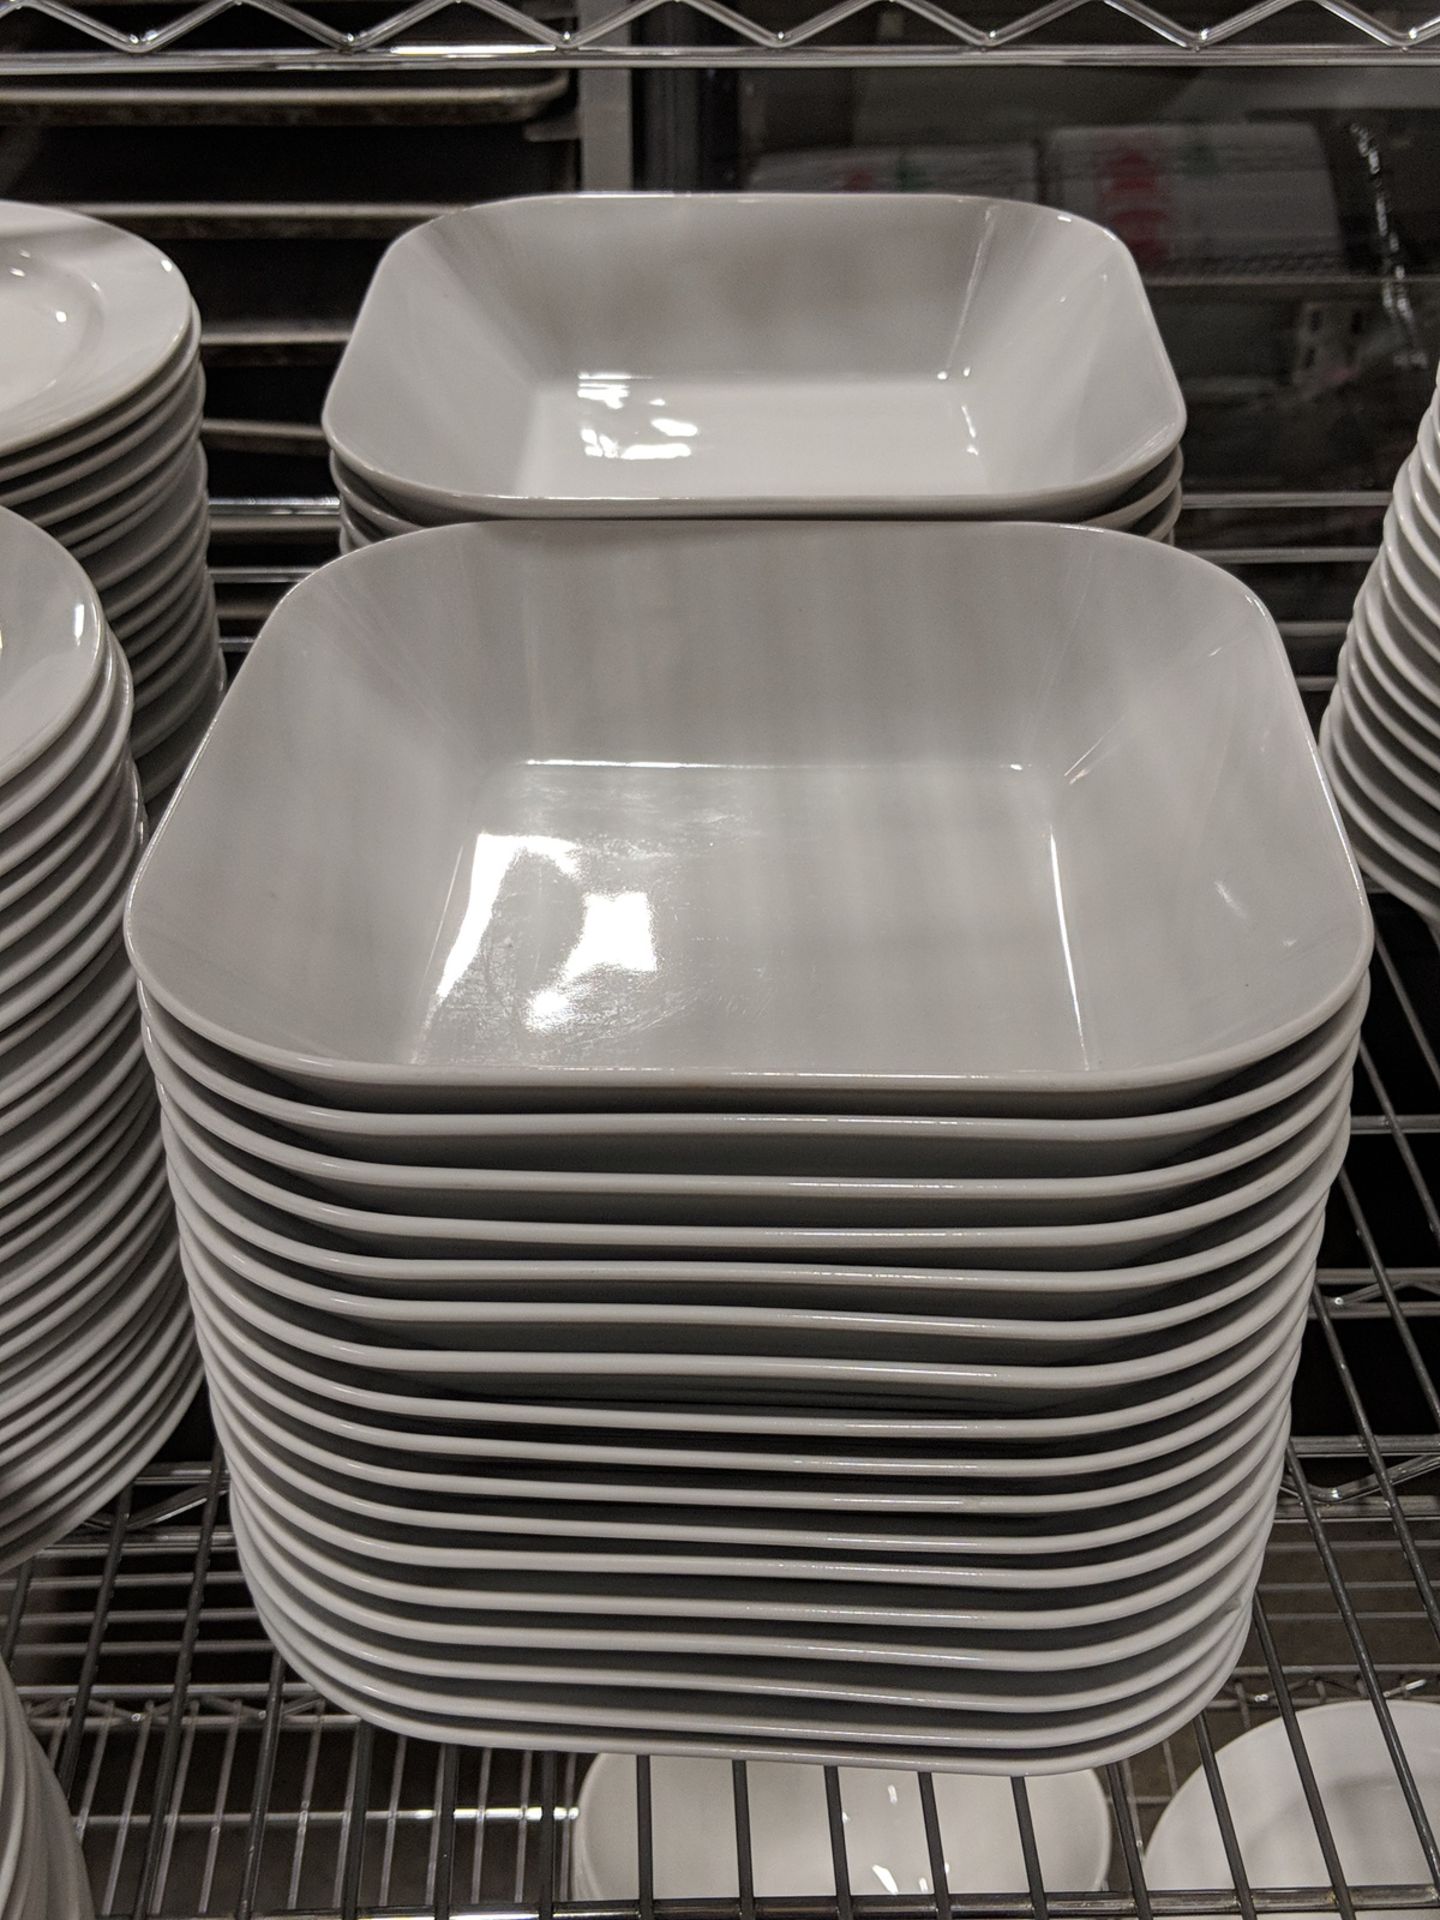 8" Porcelain Square Bowls - Lot of 33